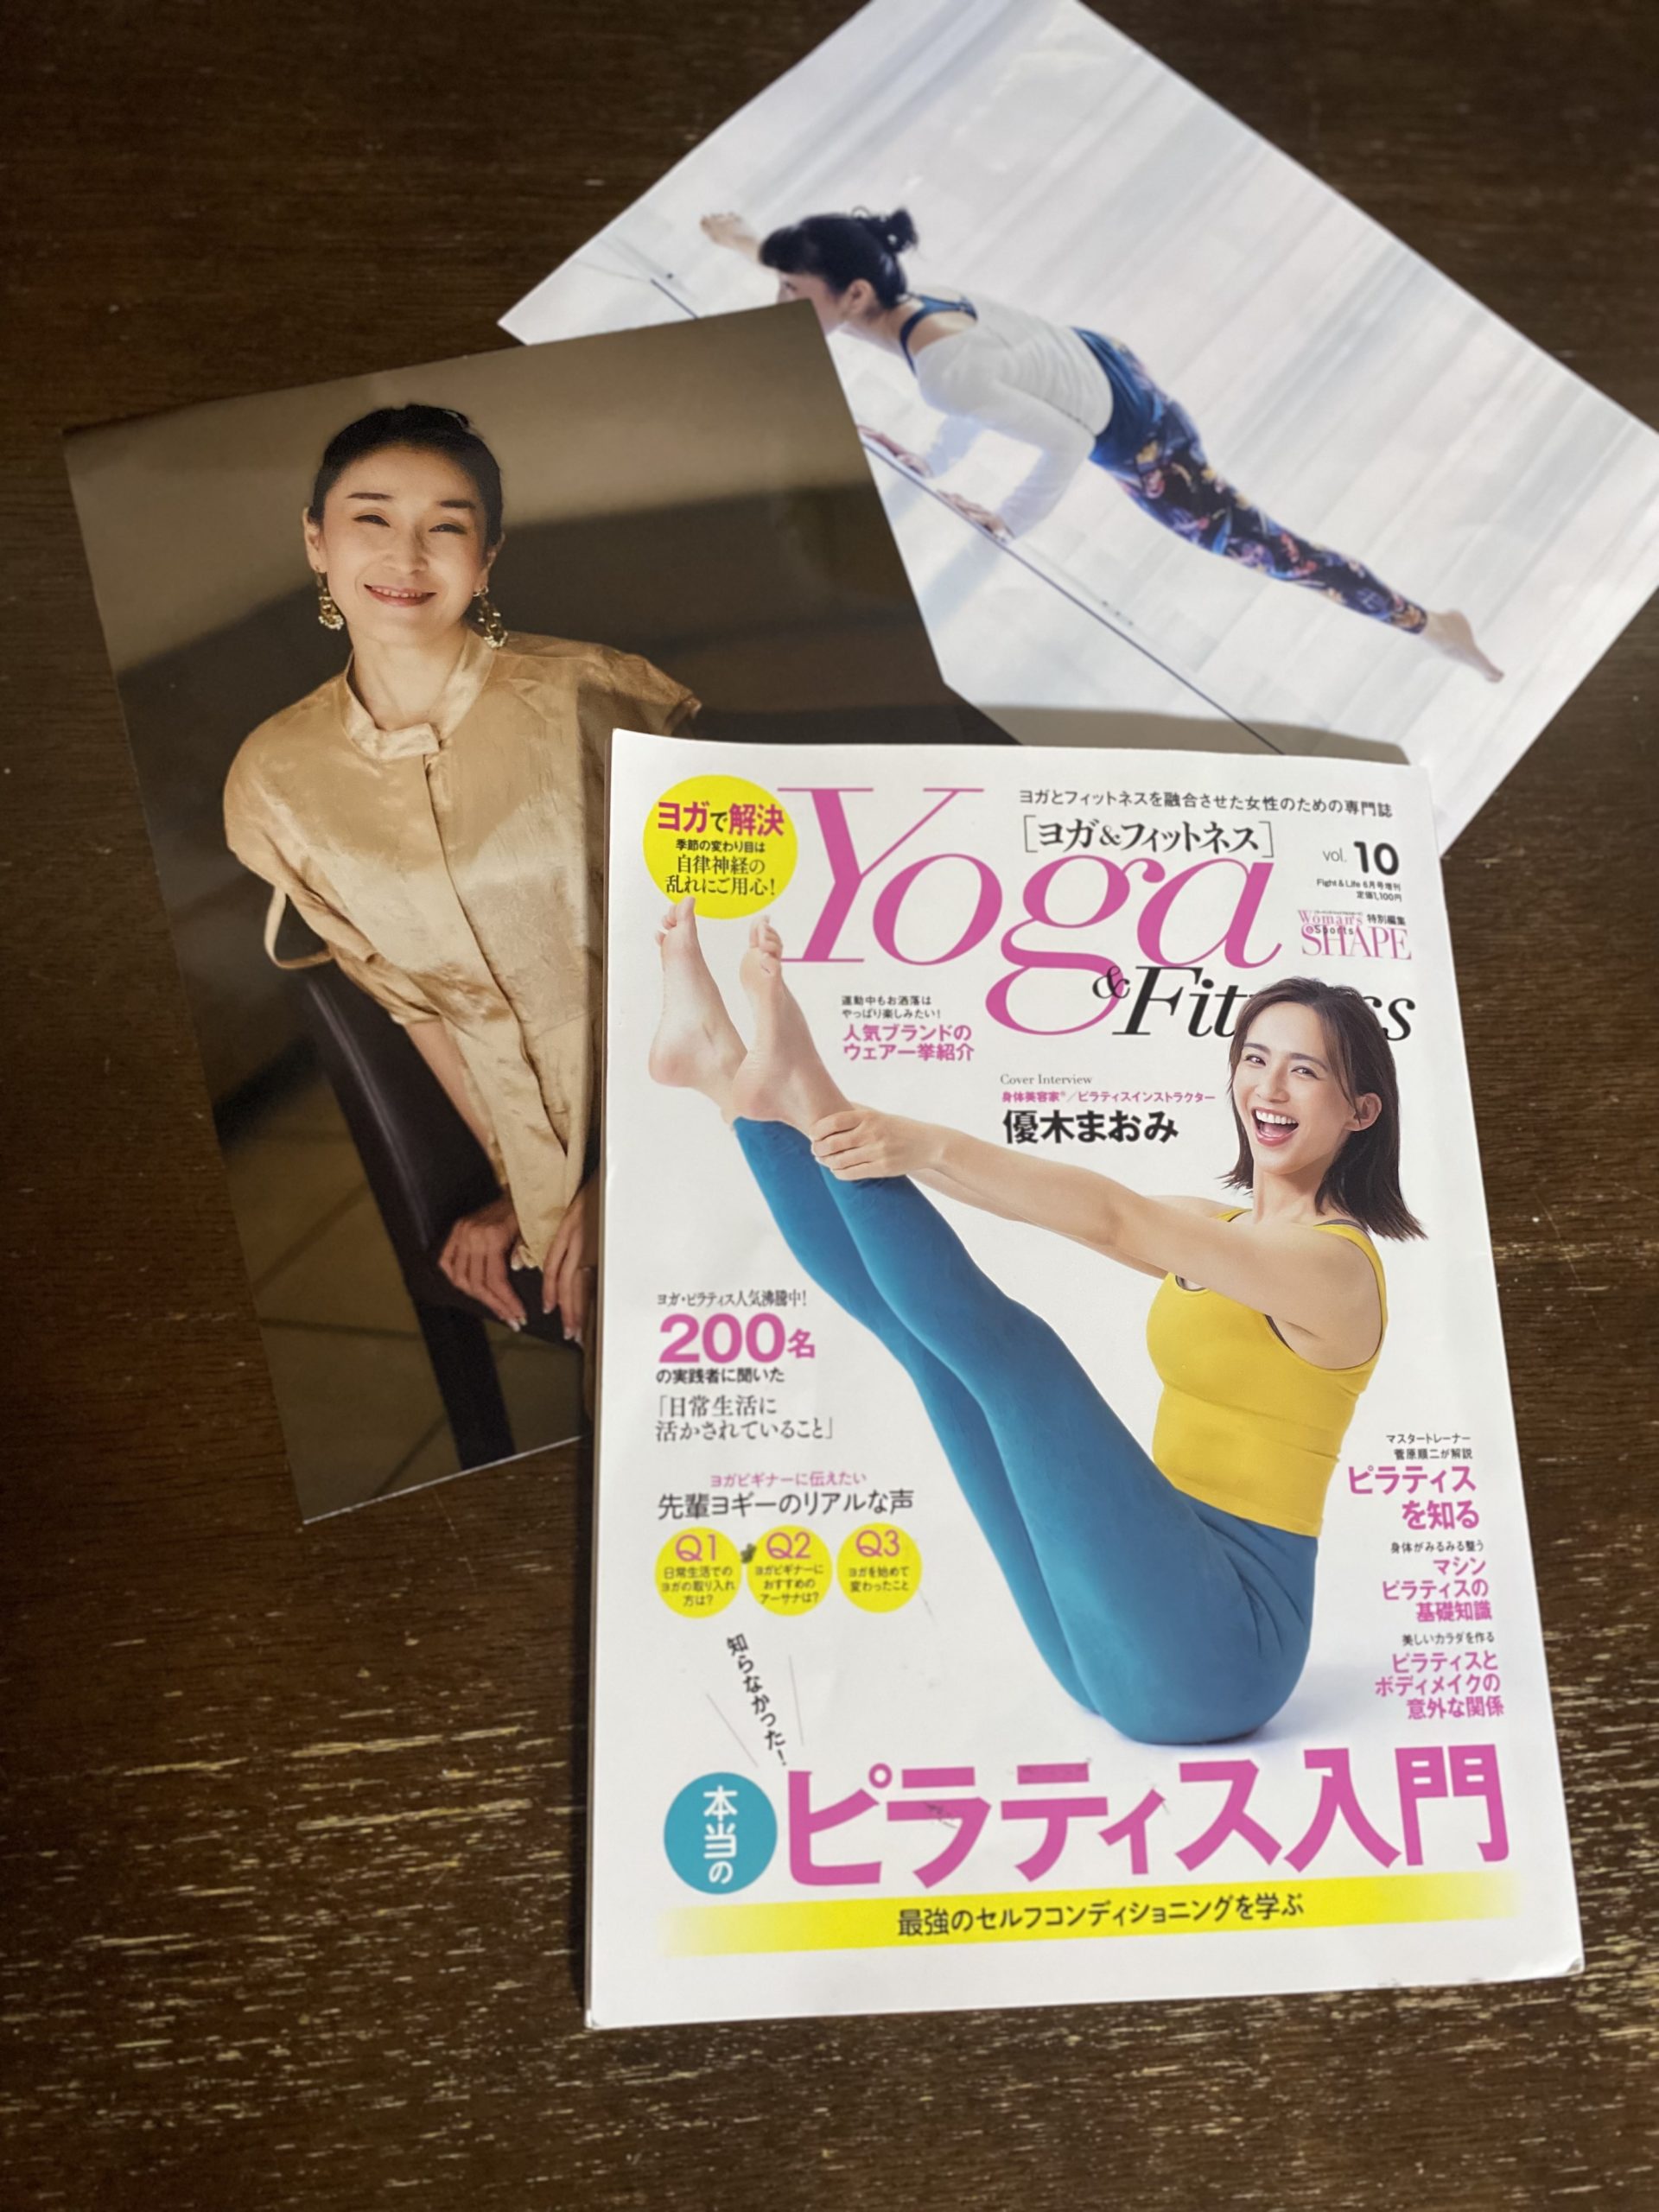 【掲載】『 Yoga & Fitness vol.10』